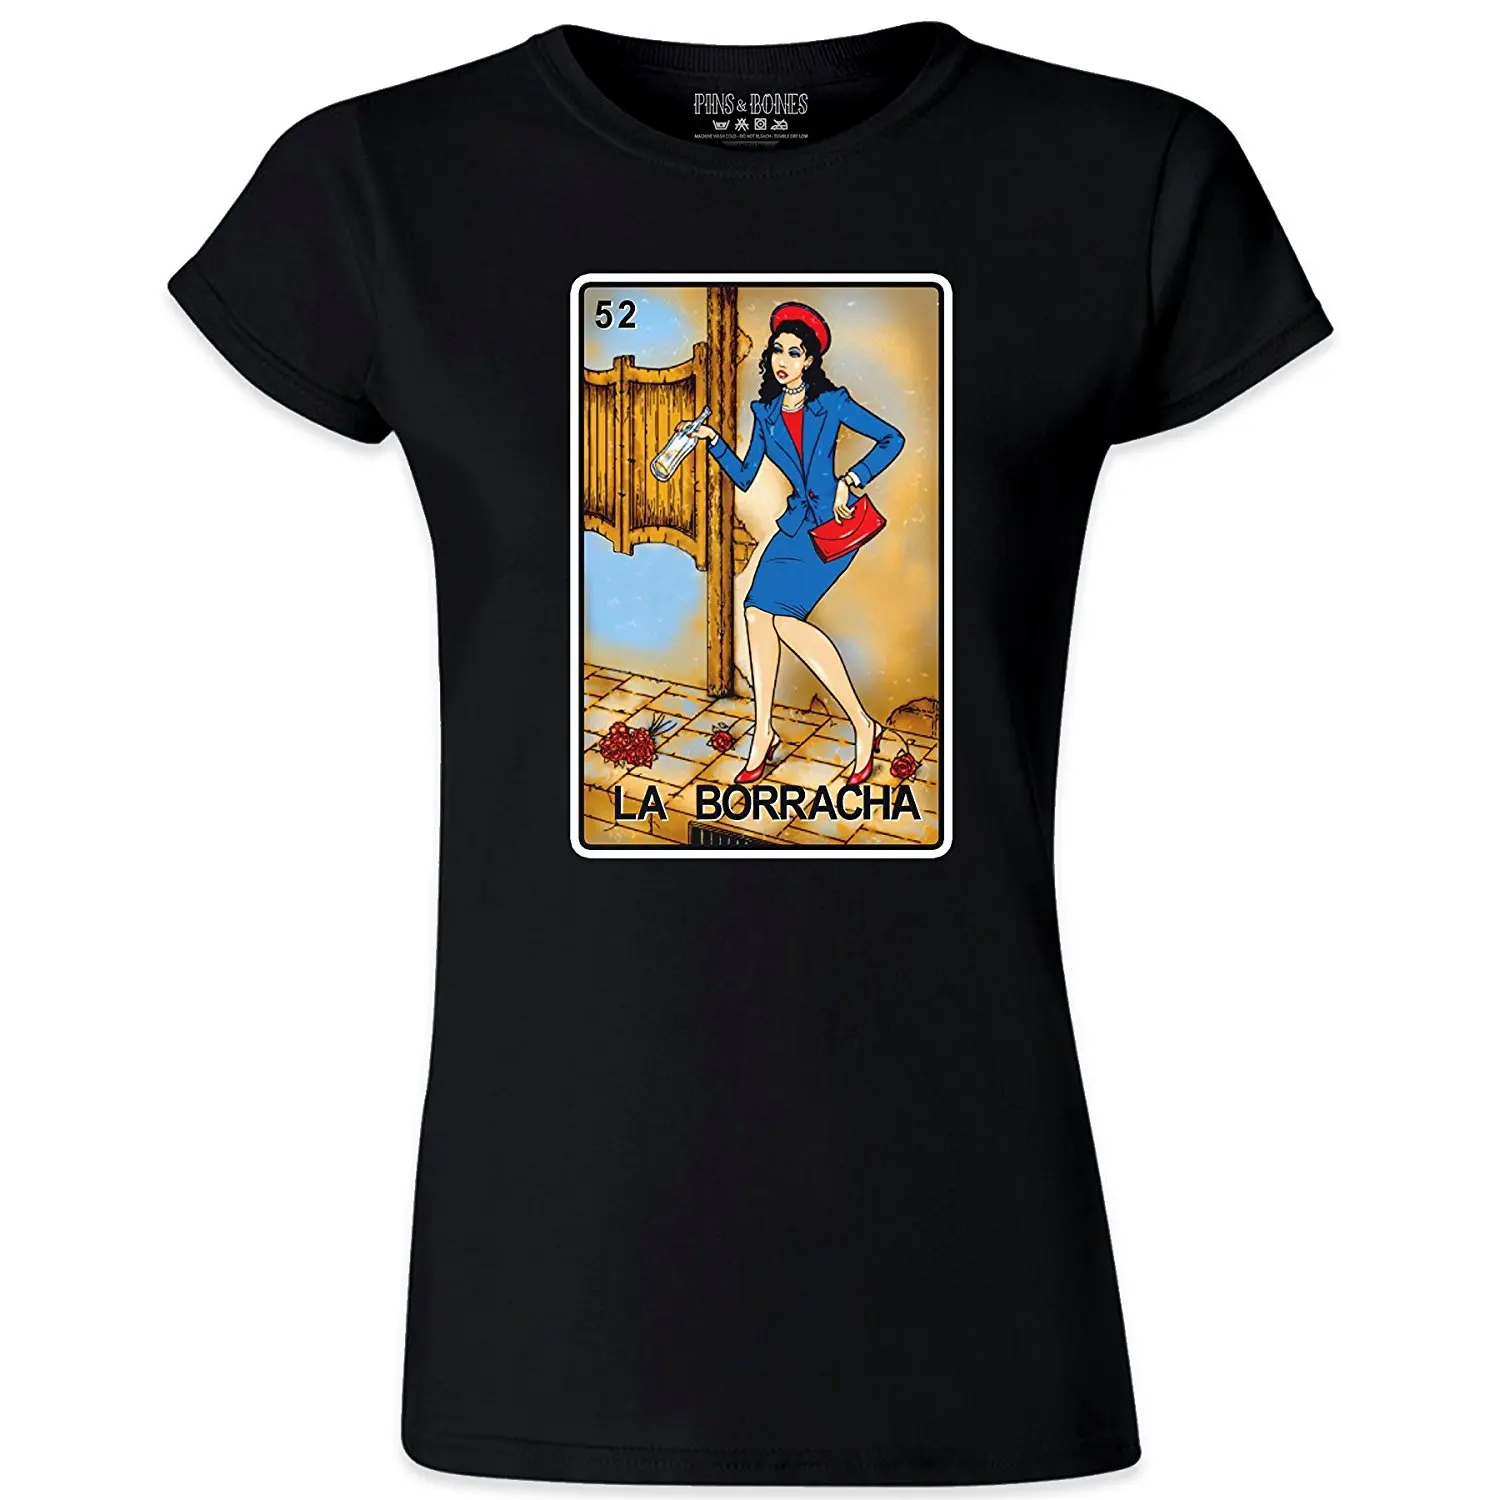 Loteria женская La Boracha Мексиканская Loteria забавная хлопковая Футболка женская футболка с коротким рукавом футболки 2018 Kawaii хлопковая Футболка